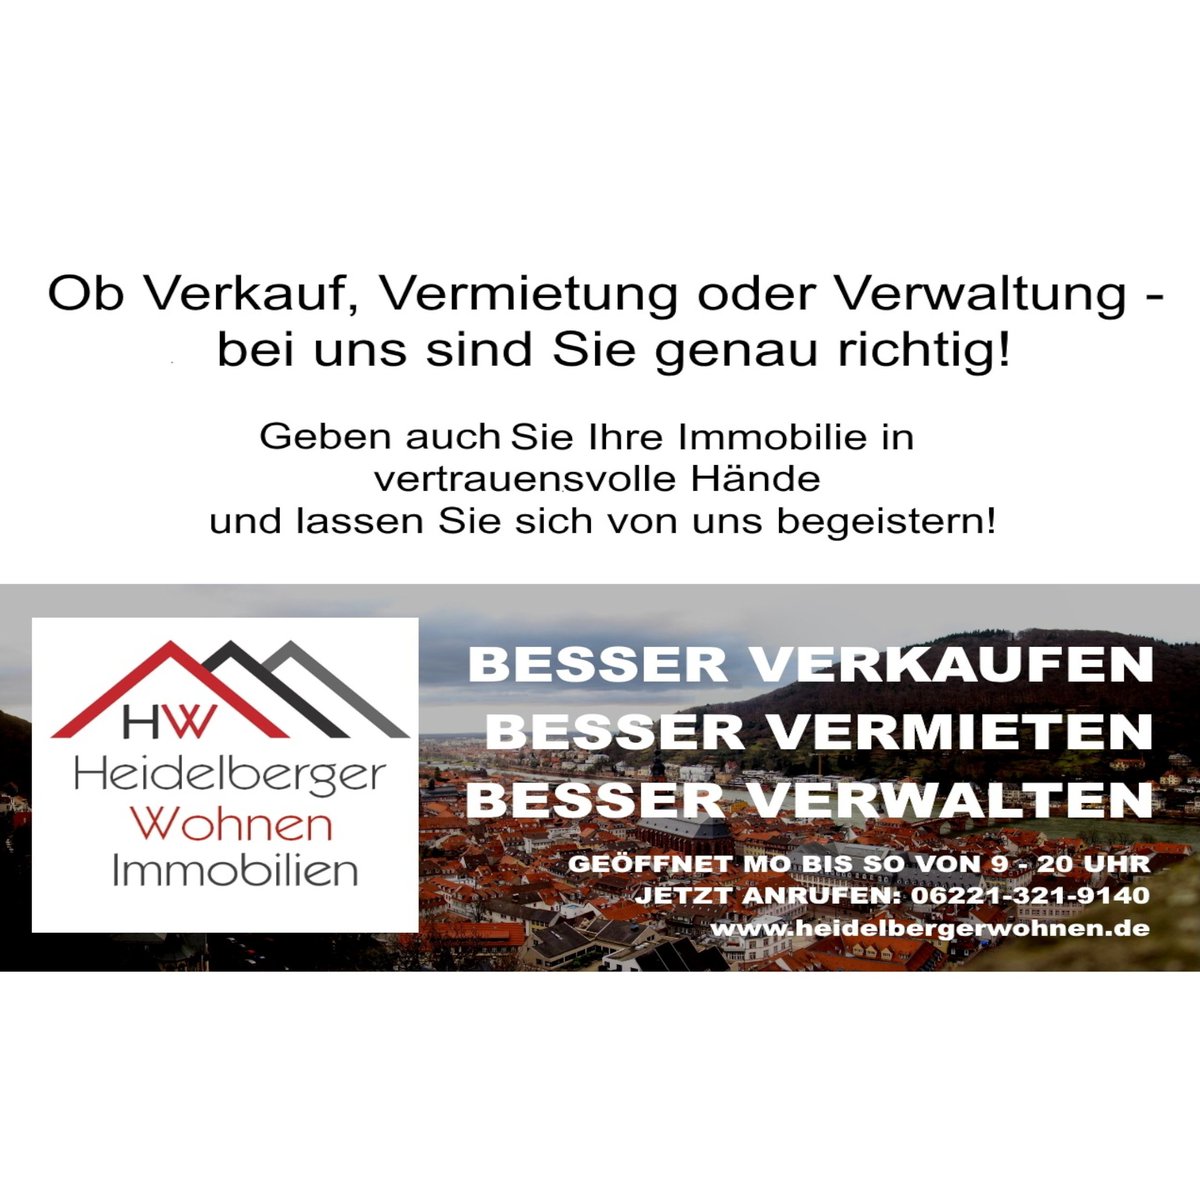 Verkauft:'1-3 Familienhaus in sehr guter Lage
in Kirchheim, 391qm Grundstück, 187qm Wohnfläche, PV'💯

Wir danken der Verkäuferseite für das in uns Gesetze #Vertrauen und wünschen dem #Käufer alles erdenklich Gute mit dem neu erworbenen #Eigentum 🍀
(Energieausweis ist beantragt)